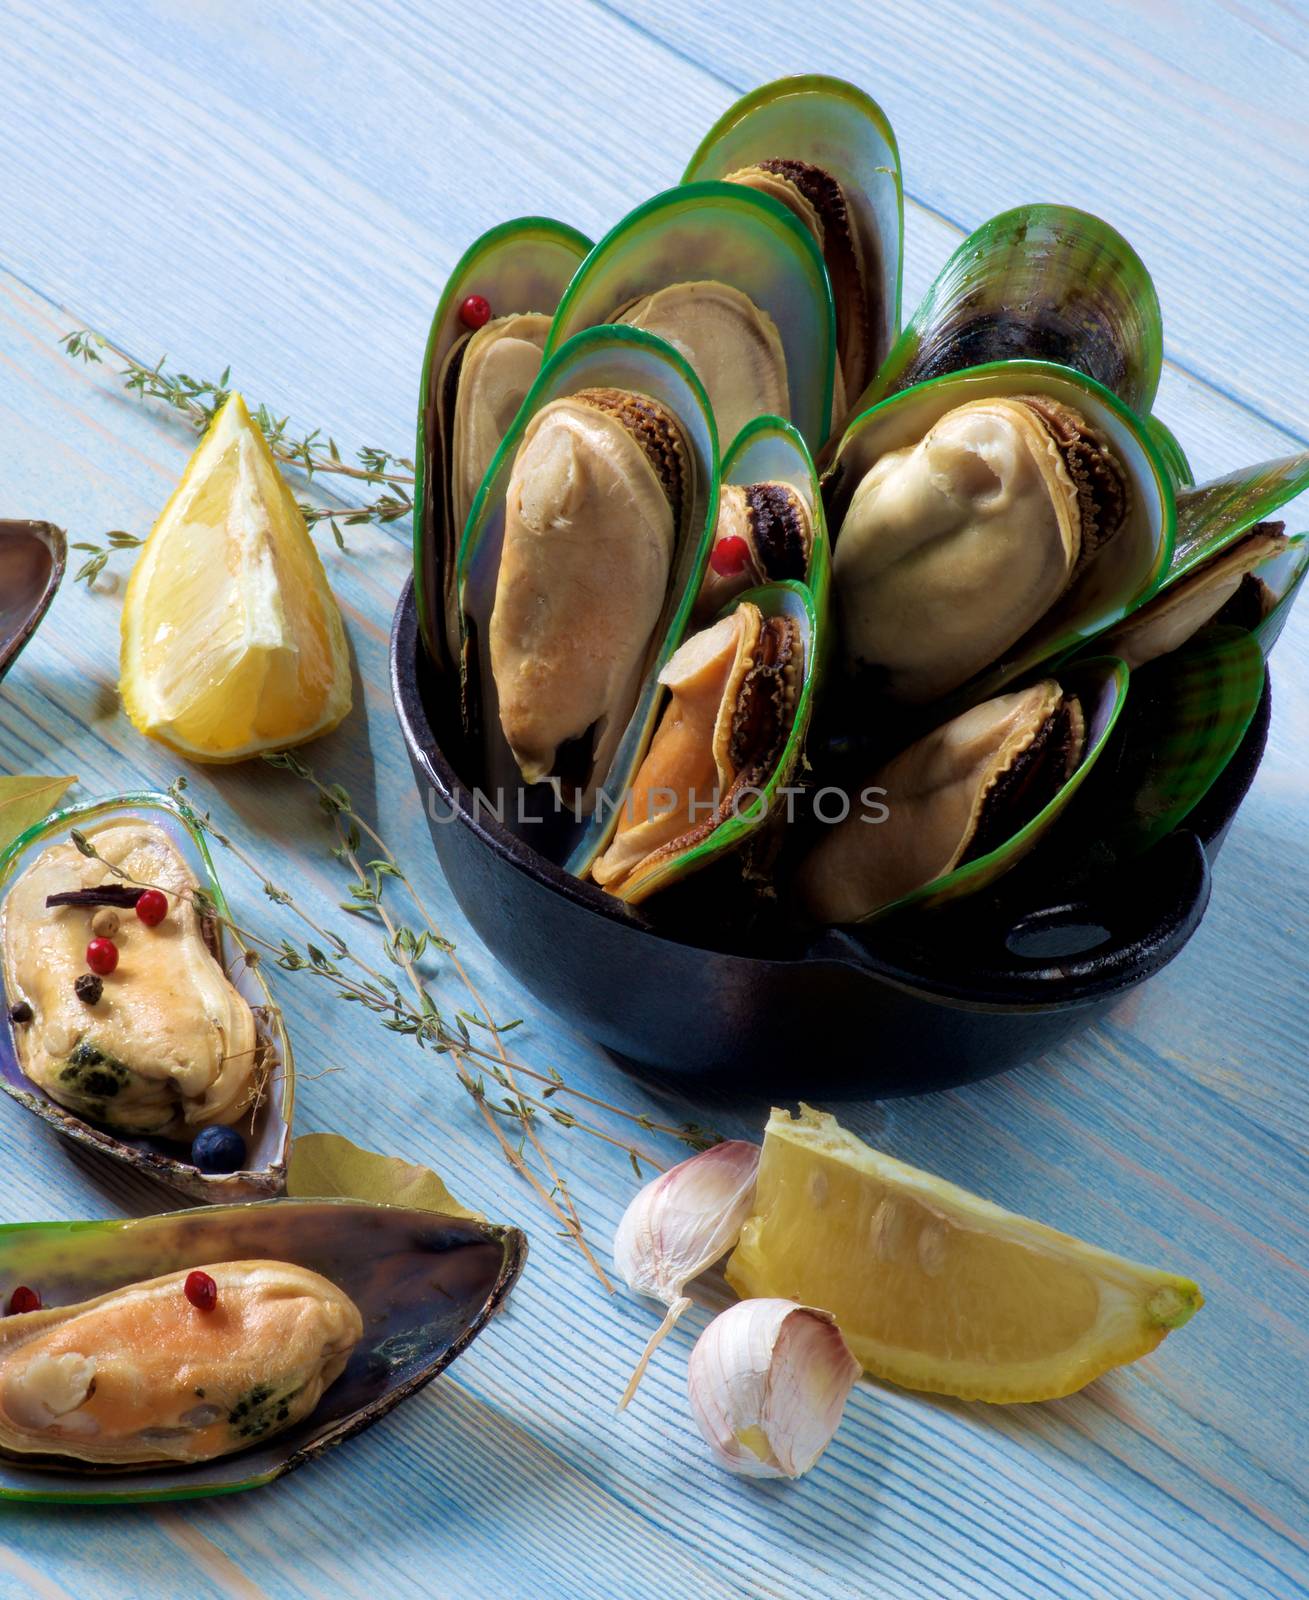 Boiled Green Mussels by zhekos